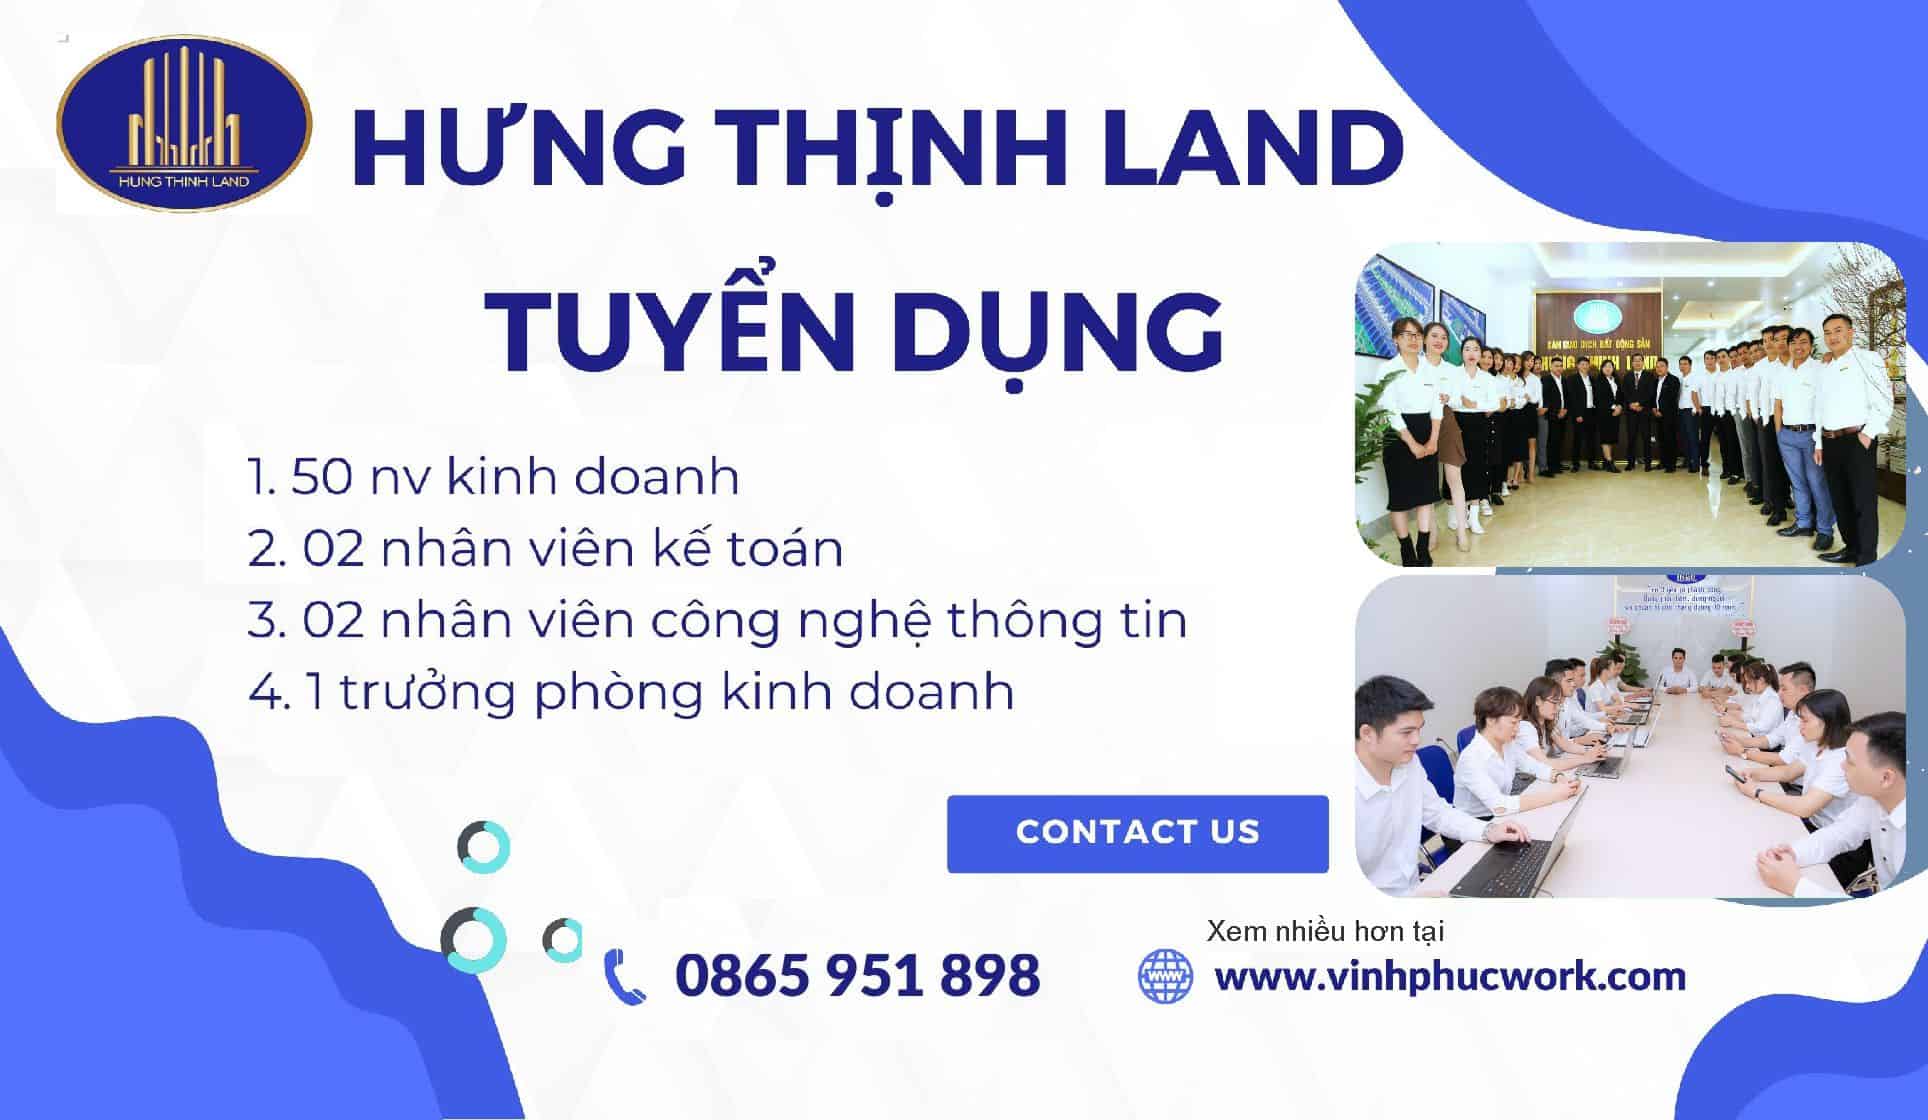 Cong Ty Co Phan Hung Thinh Land Tuyen Truong Phong Kinh Doanh Nv Ke Toan Nv It Nhan Vien Kinh Doanh Du An 9